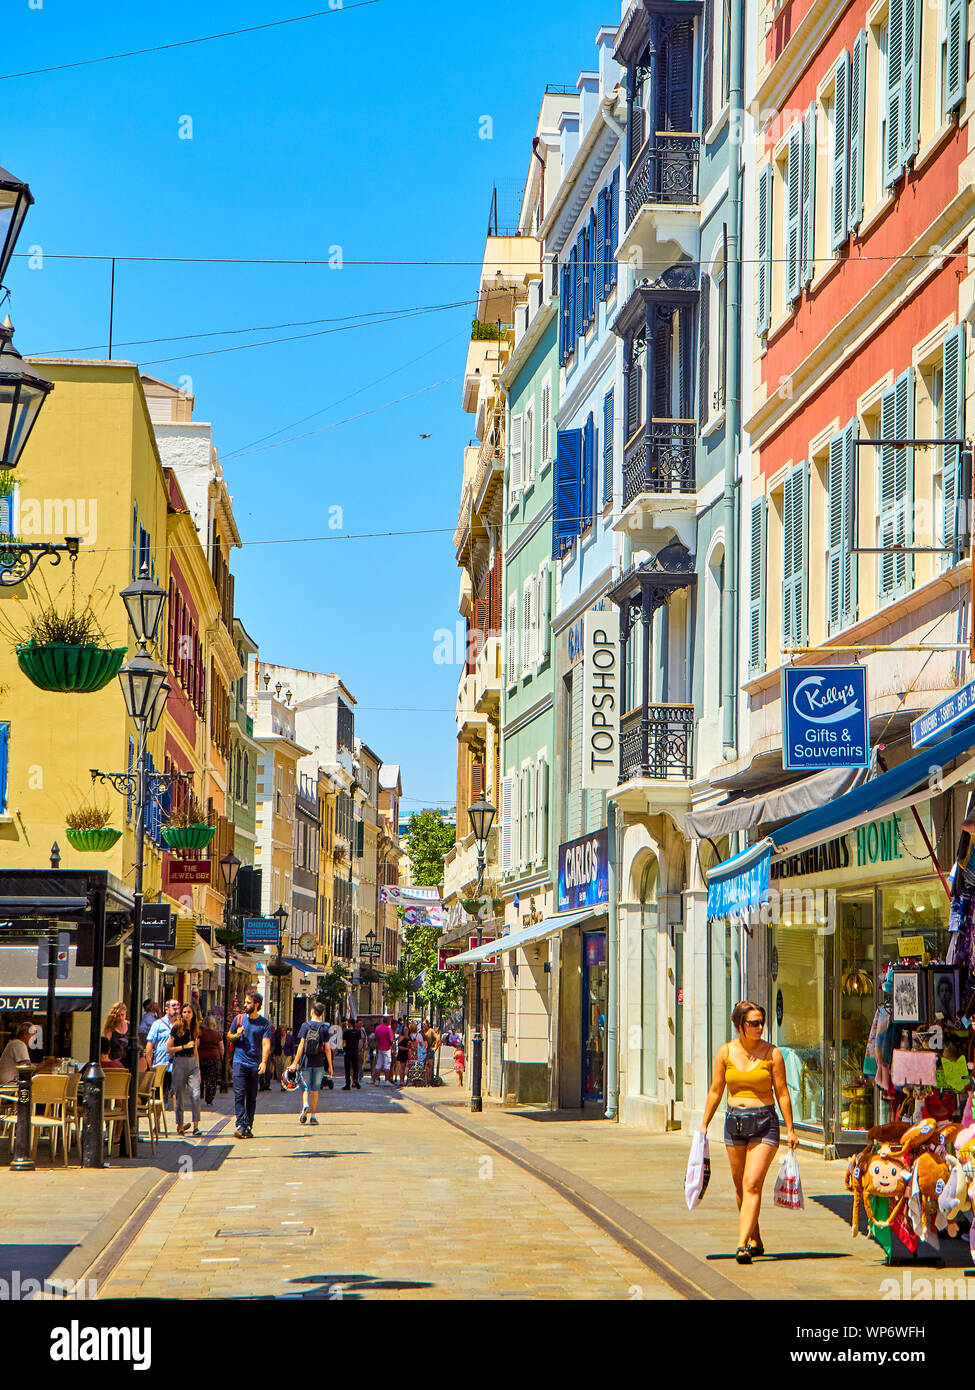 Gibraltar, UK - 29. Juni 2019. Touristen zu Fuß auf einer Hauptstraße im sonnigen Tag. Gibraltar Innenstadt, Britisches Überseegebiet. UK. Stockfoto